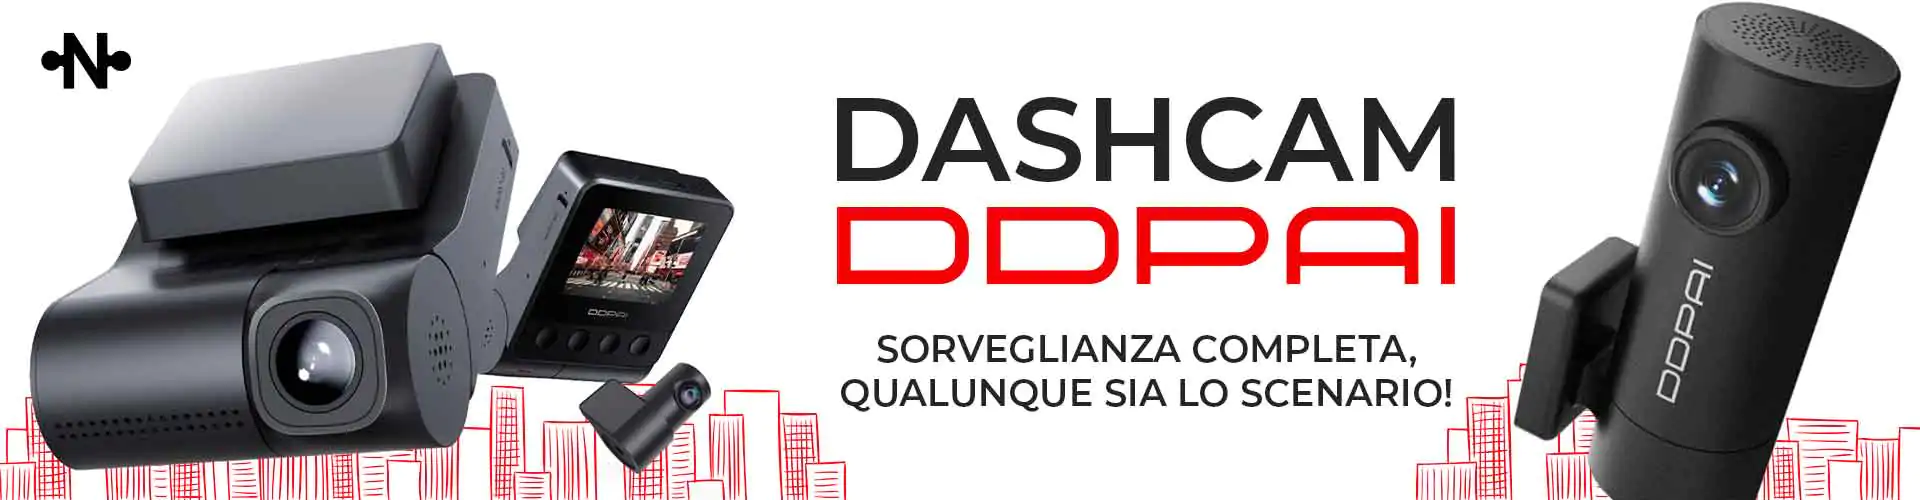 Dashcam DDPAI sorveglianza completa, qualunque sia lo scenario!